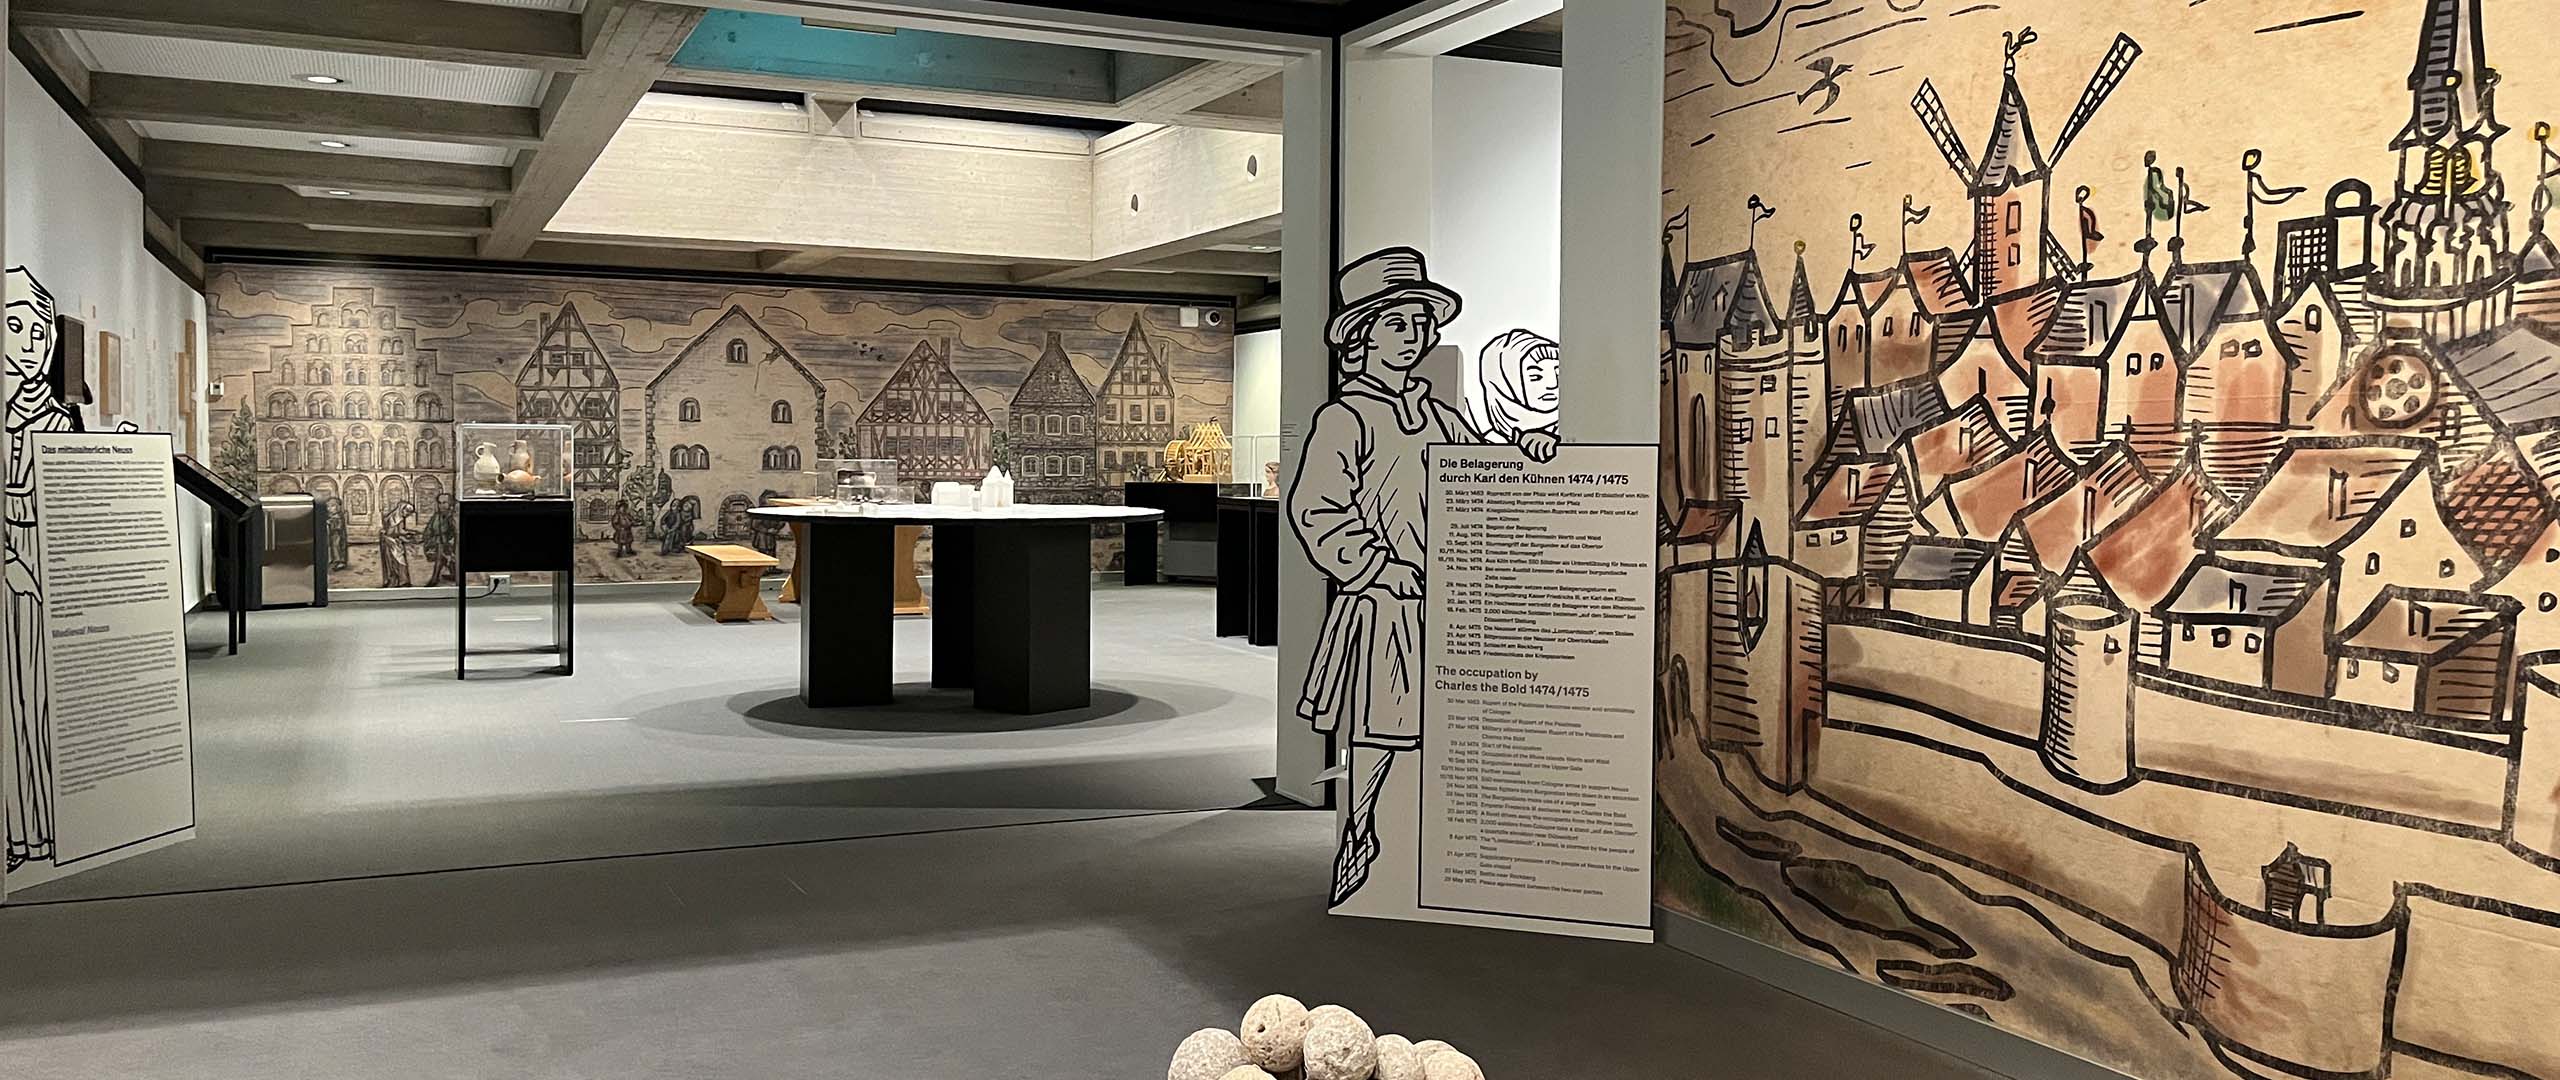 ›Neuss 1474 – Die Belagerung durch Karl den Kühnen‹ im Clemens Sels Museum in Neuss